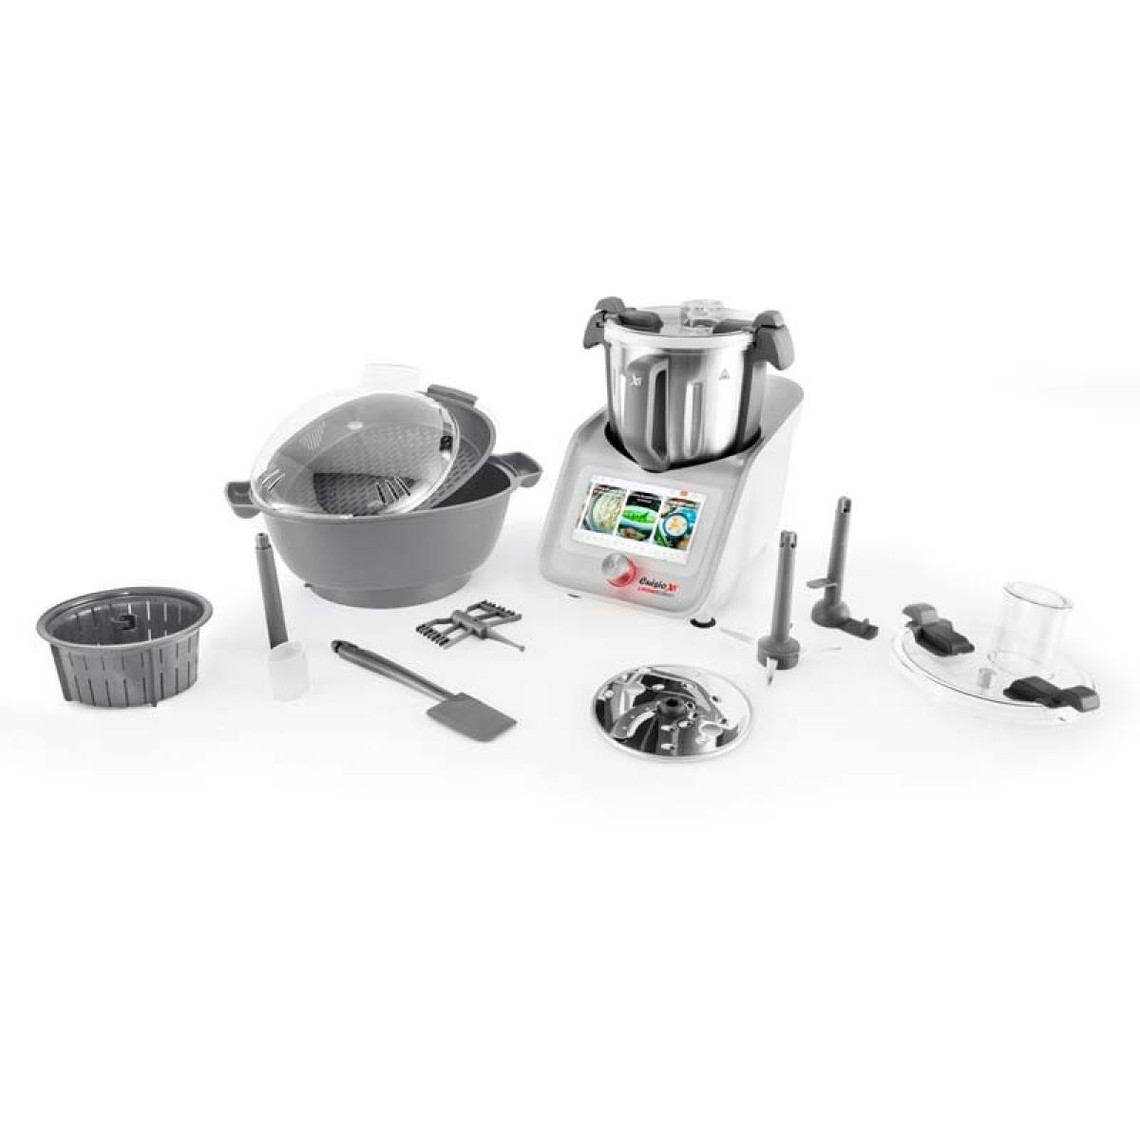 Kitchencook Robot Cuiseur Multifonction Connecte Cuisio Xt Connect Limited Edition De Kitchencook